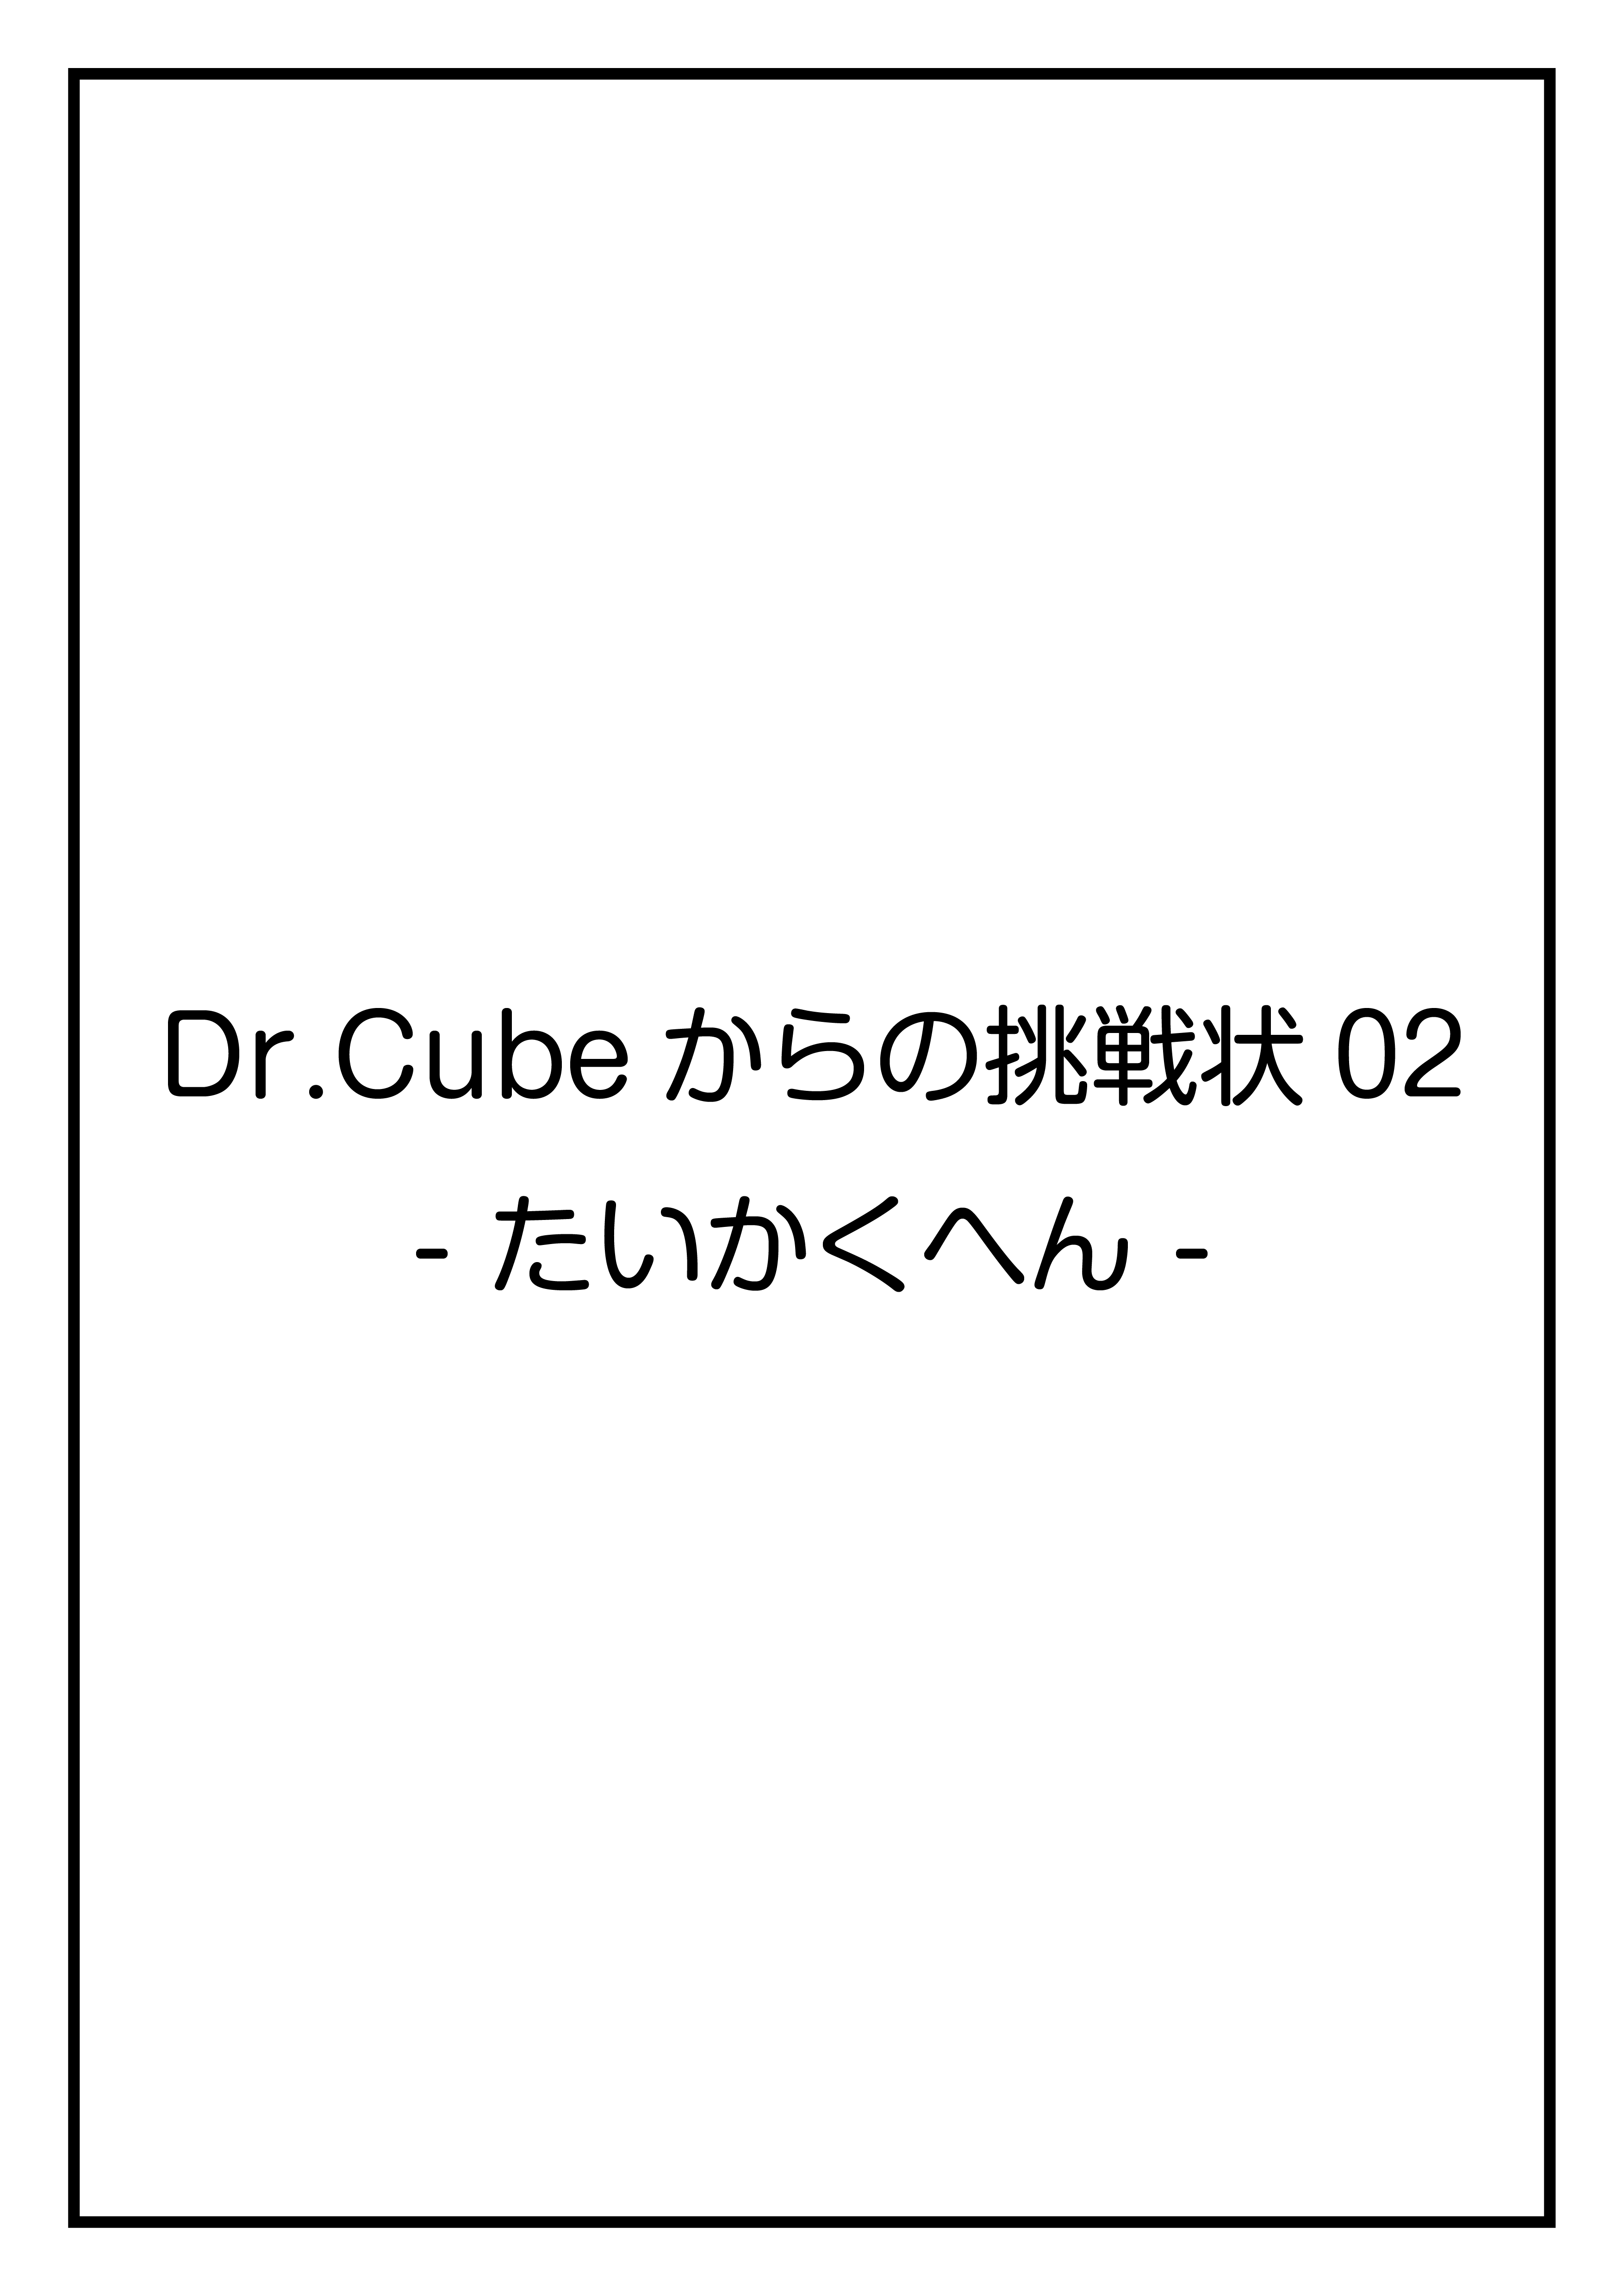 CubeFactory ✕ テクニコテクニカ『Dr.Cubeからの挑戦状02 -たいかく